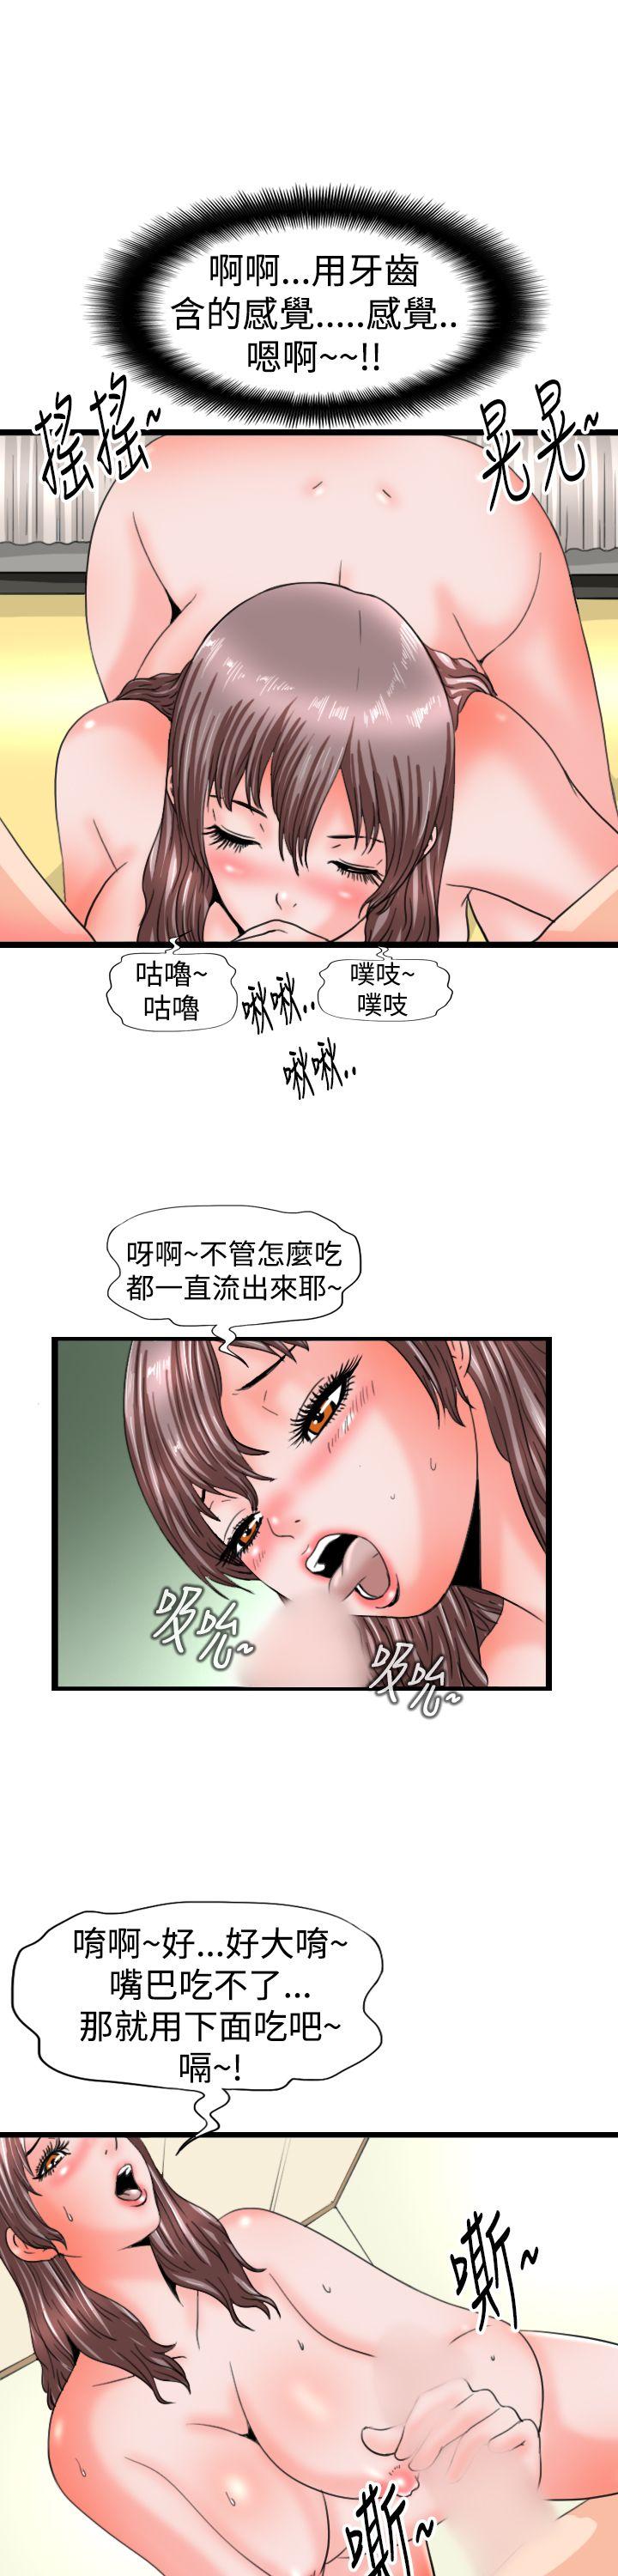 韩国污漫画 感性變態(完結) 第11话 7